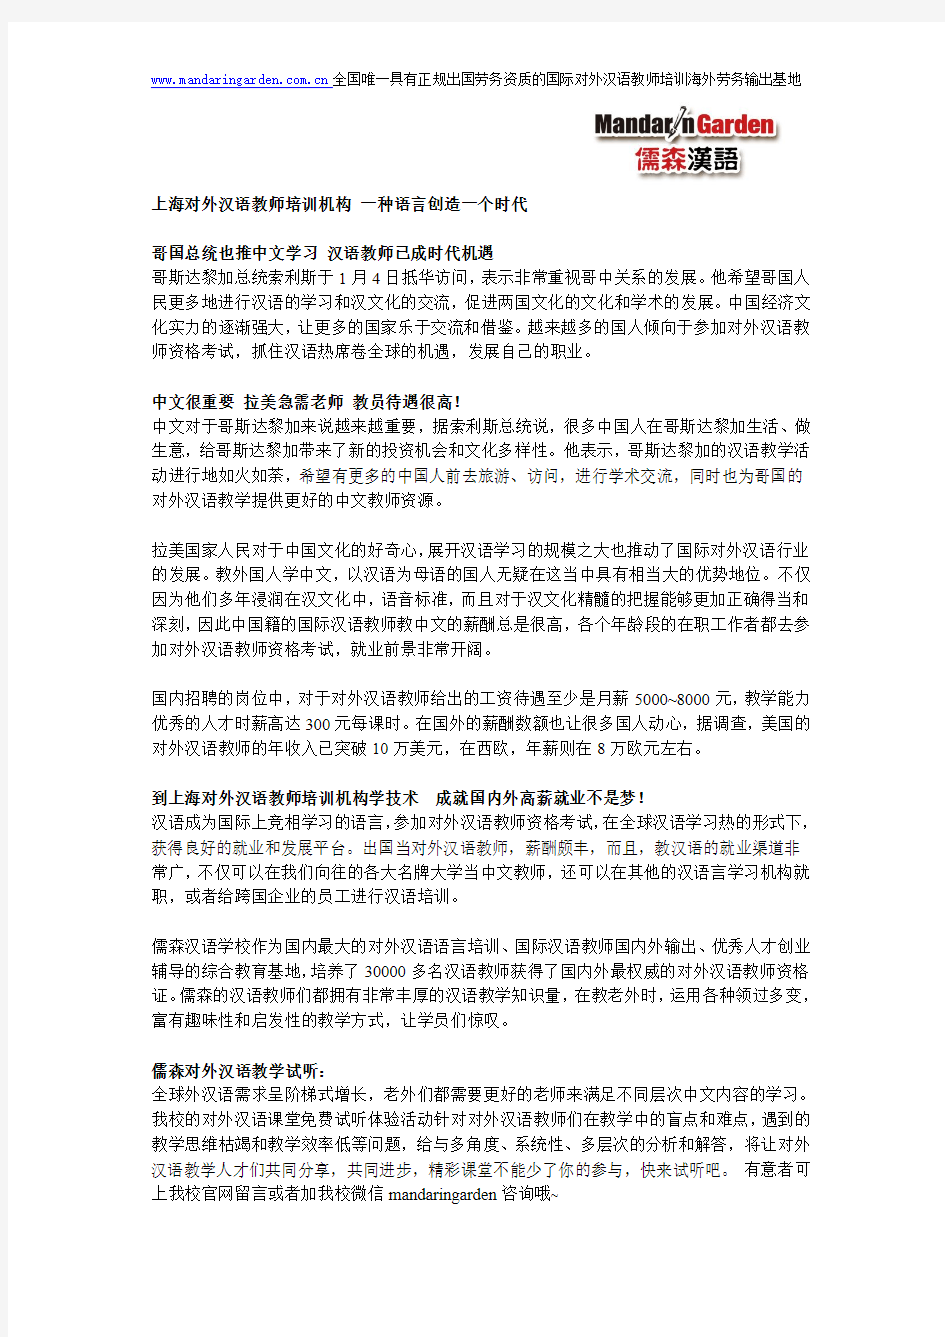 上海对外汉语教师培训机构 一种语言创造一个时代